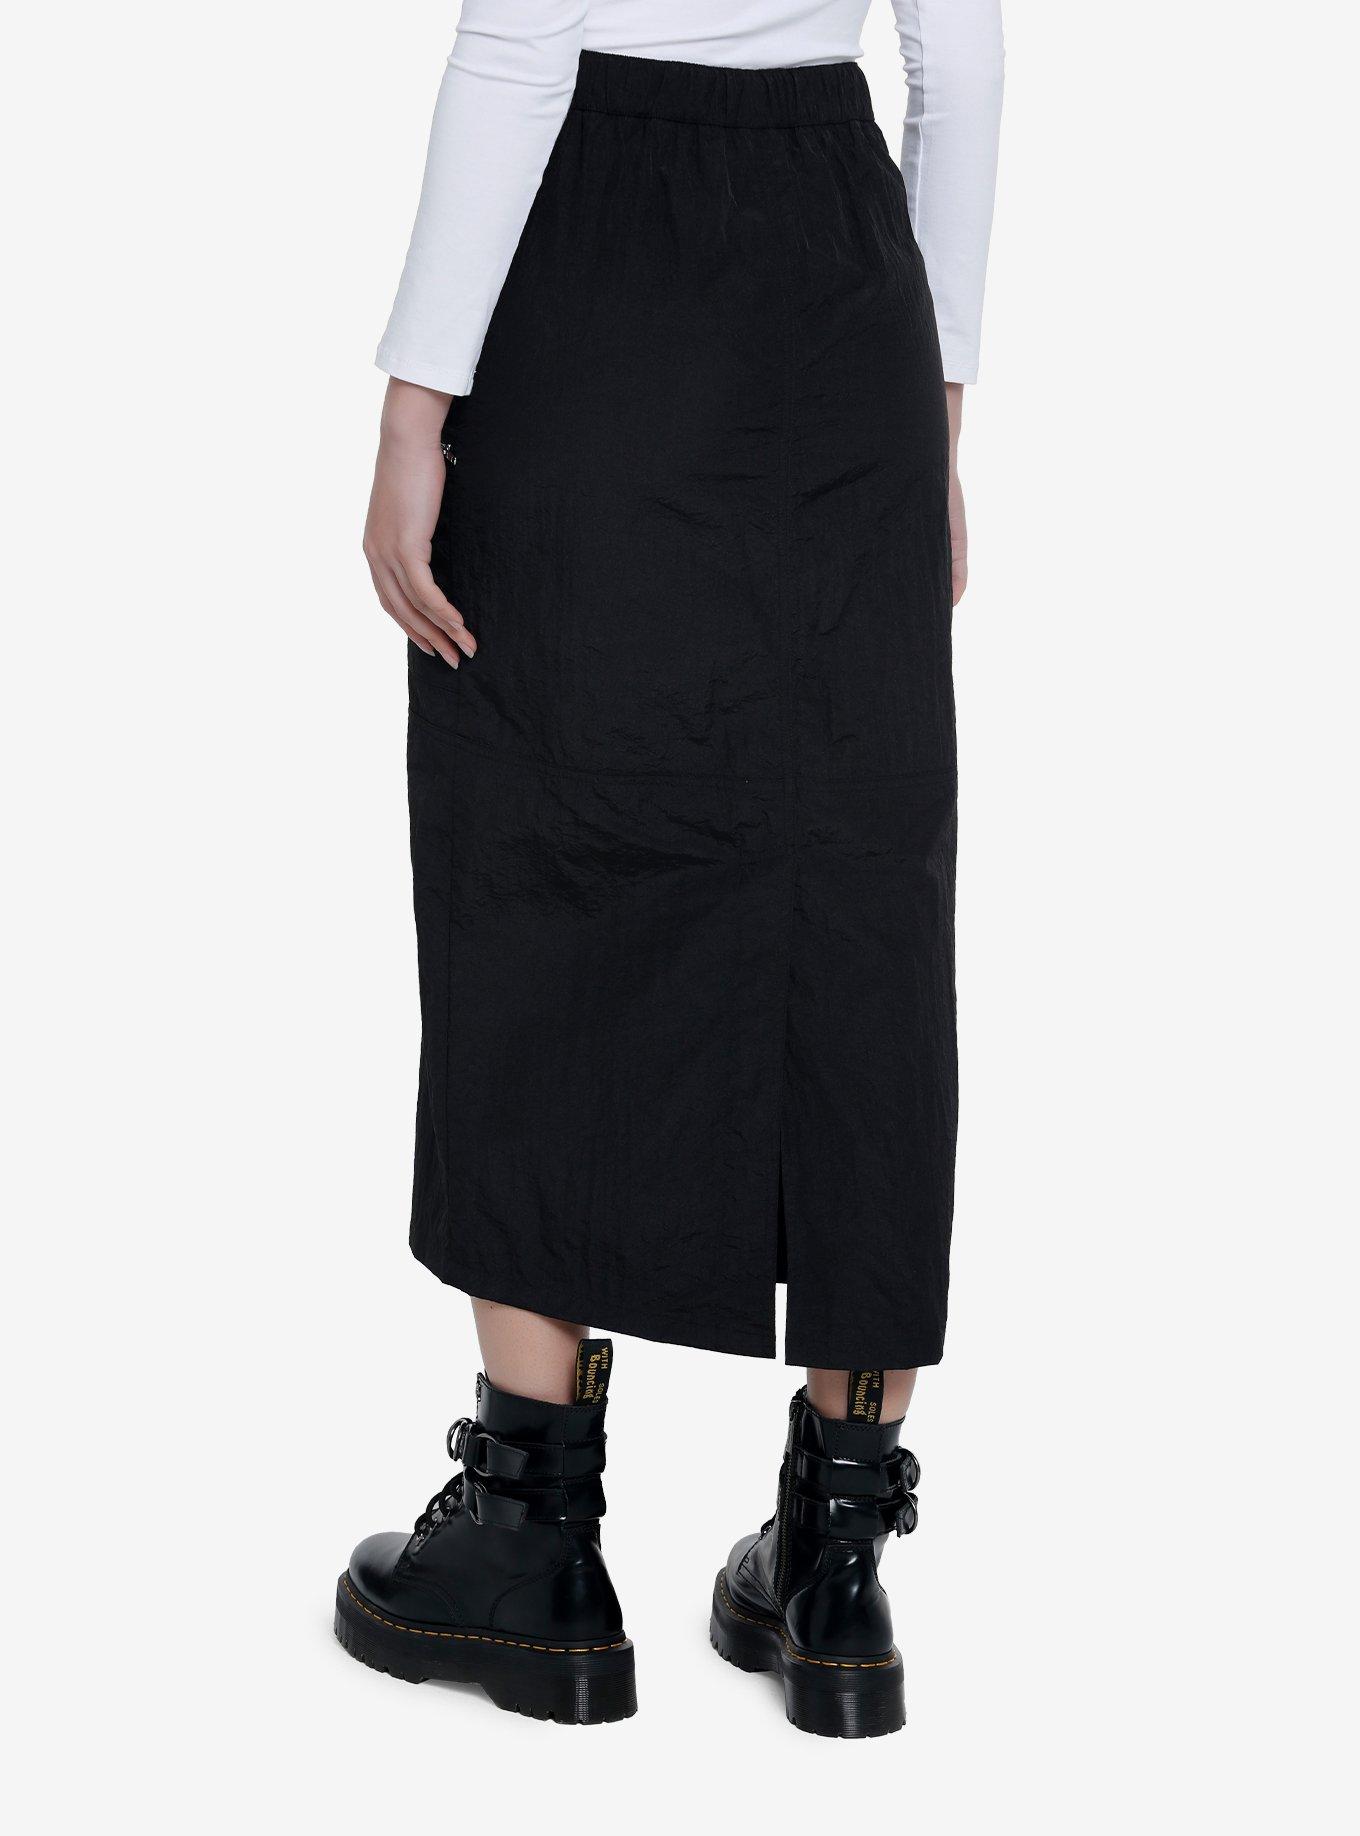 Black Cargo Maxi Skirt, BLACK, alternate